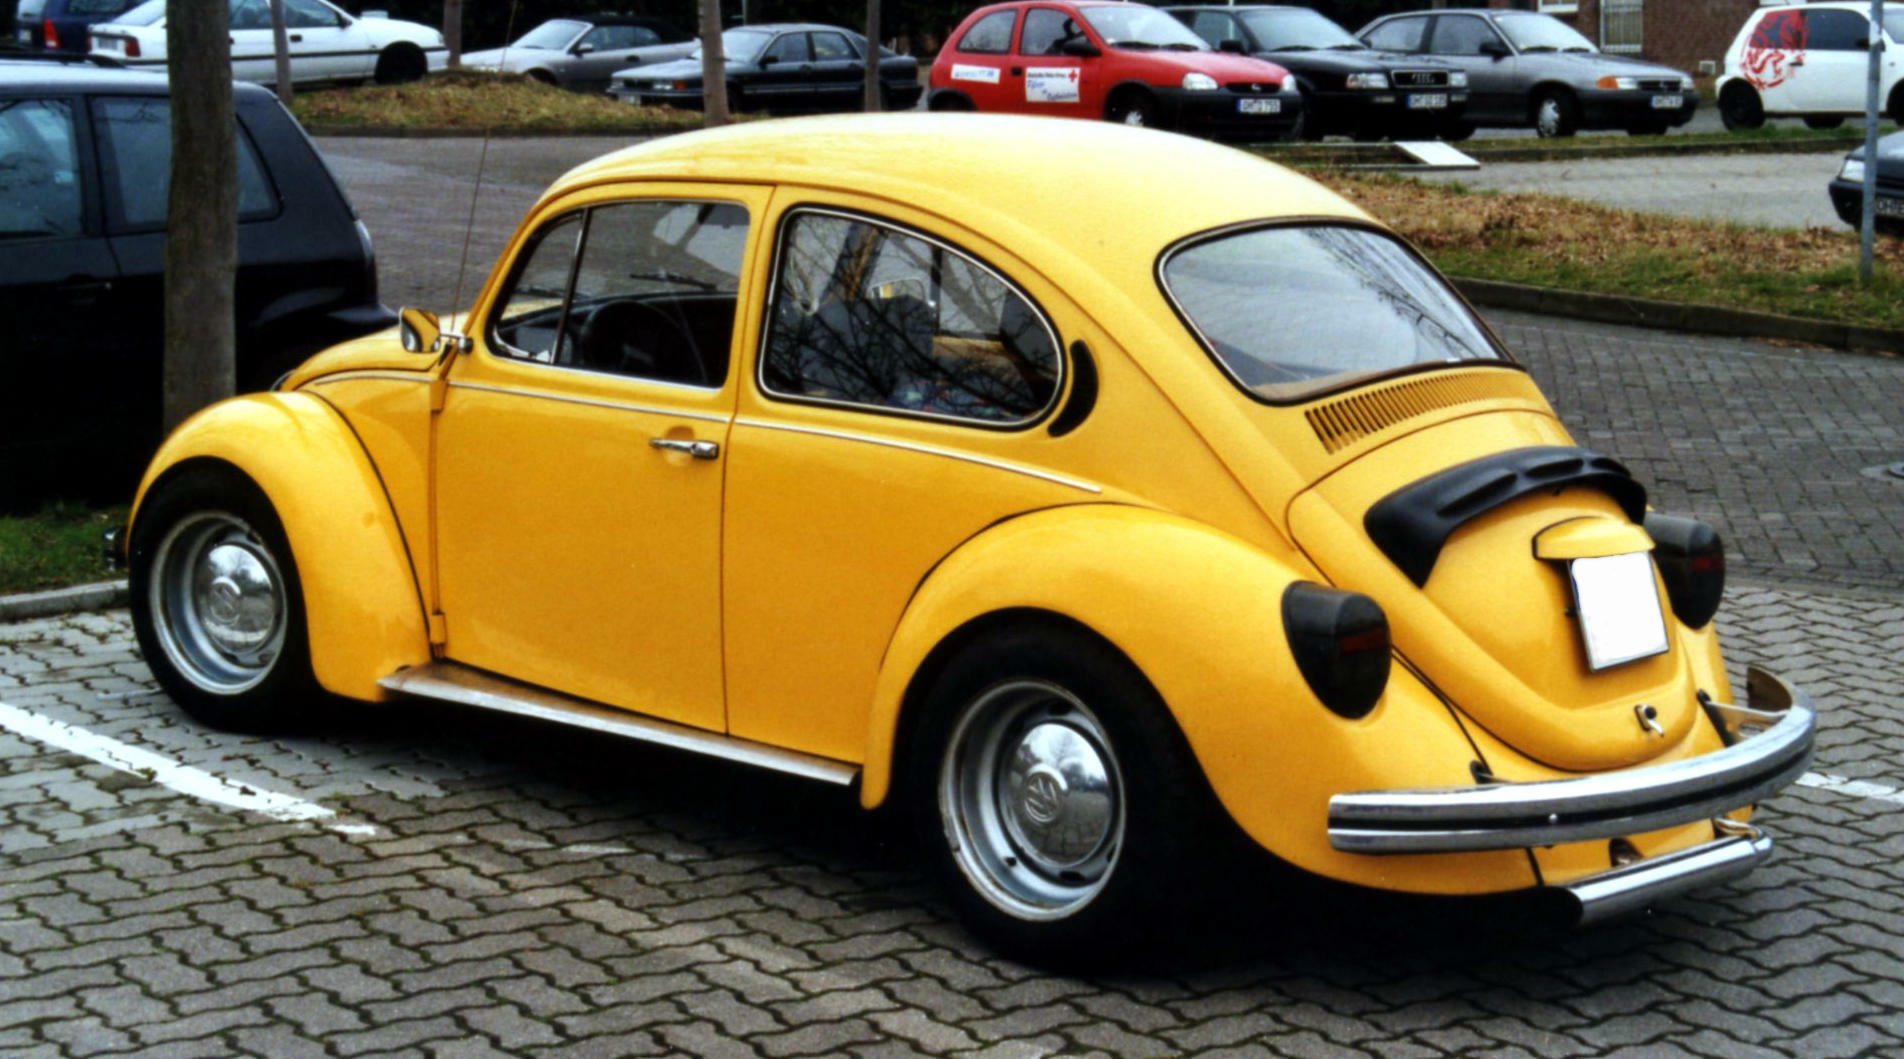 Volkswagen Kfer picture 7 reviews news specs buy car